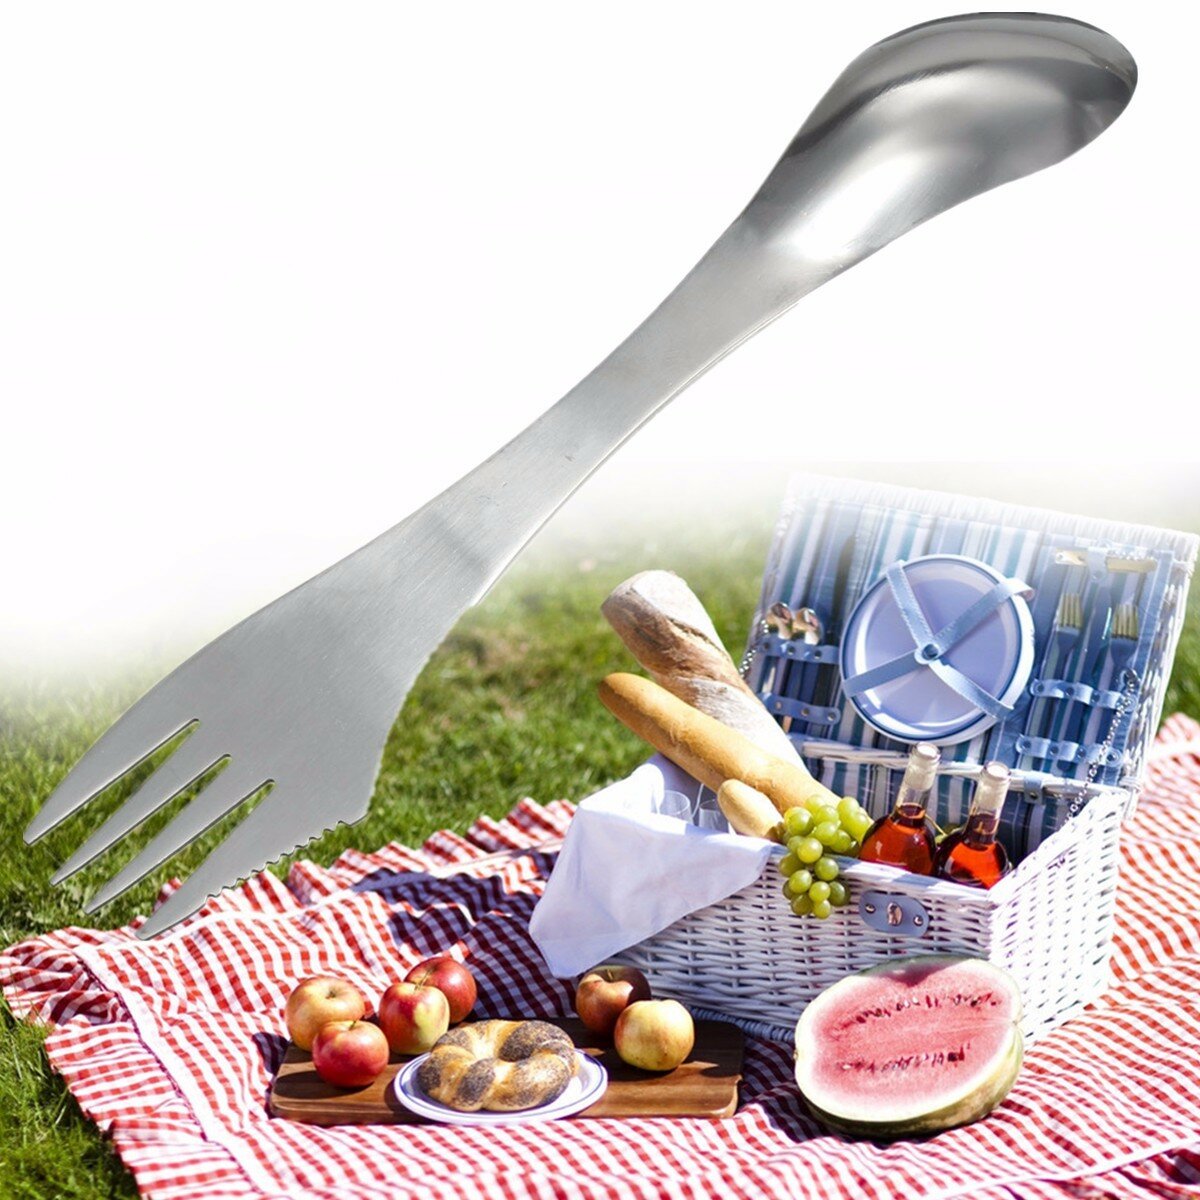 

3 in 1 Metal Spork Spoon Fork Cutlery Utensil Multifunction Stainless Steel Tableware Outdoor Portable Camping Picnic Ga